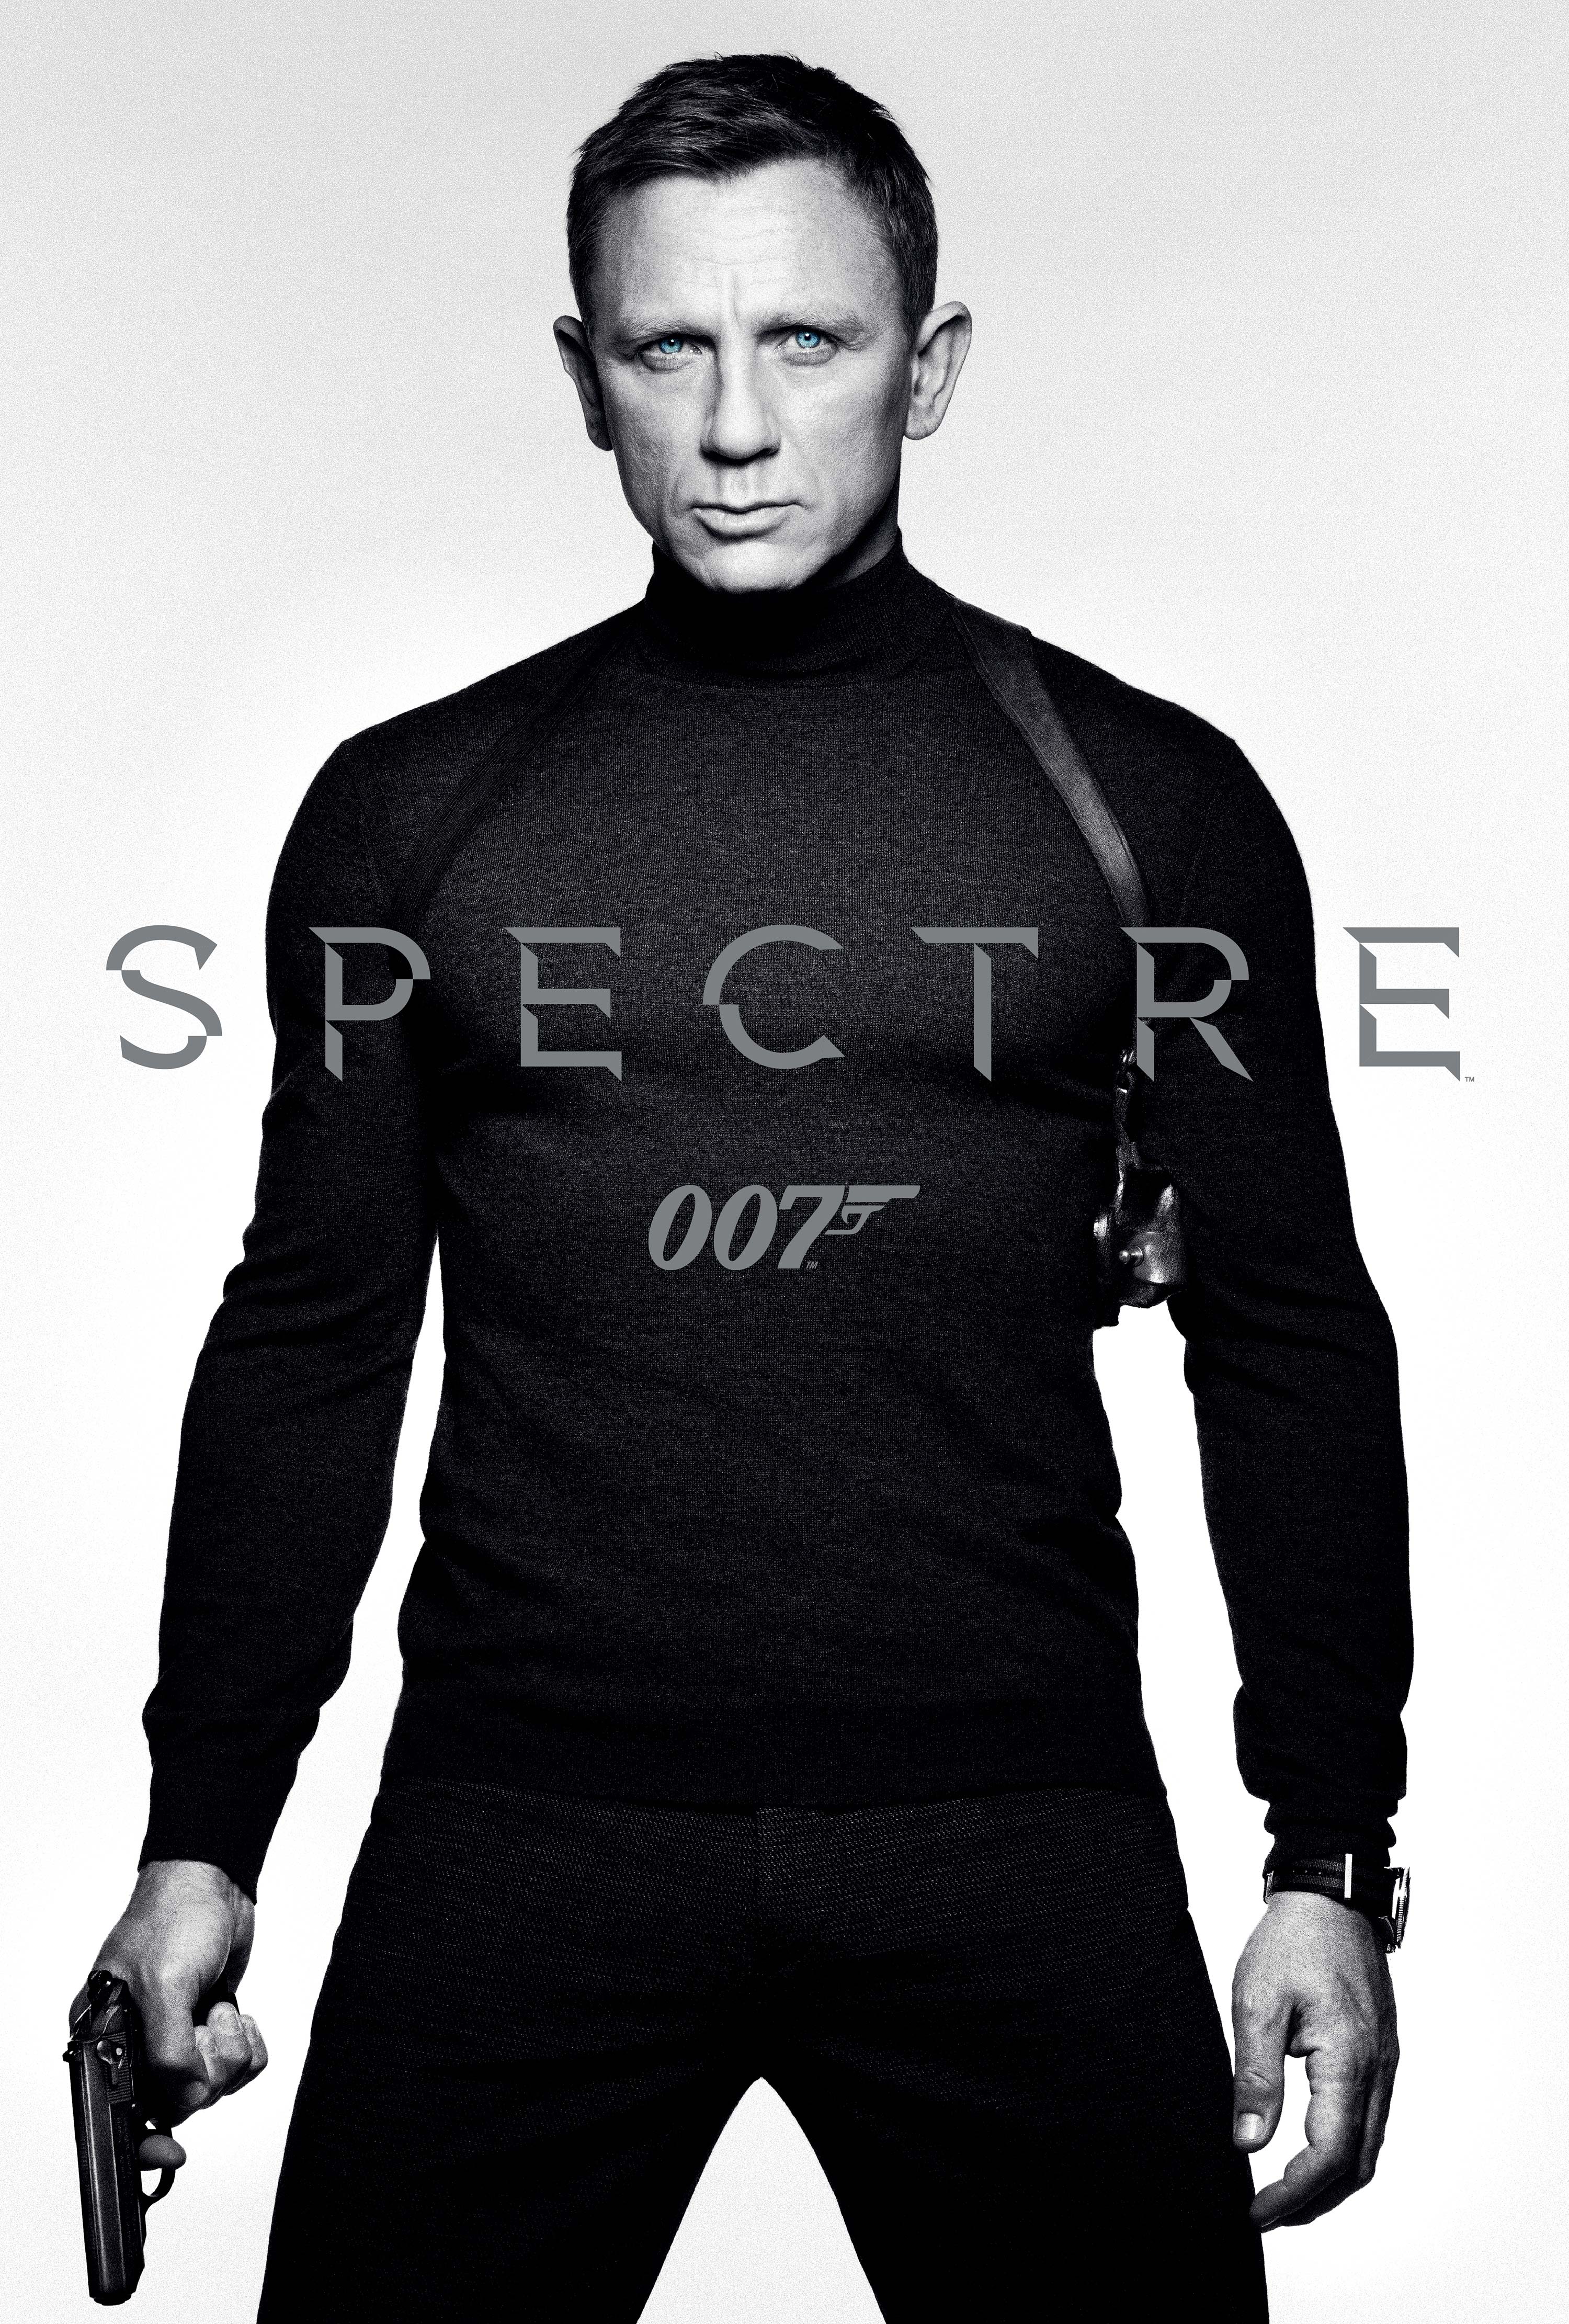 Spectre цены. Дэниел Крейг 007. Дэниел Крейг 007 спектр. Дэниел Крейг спектр.